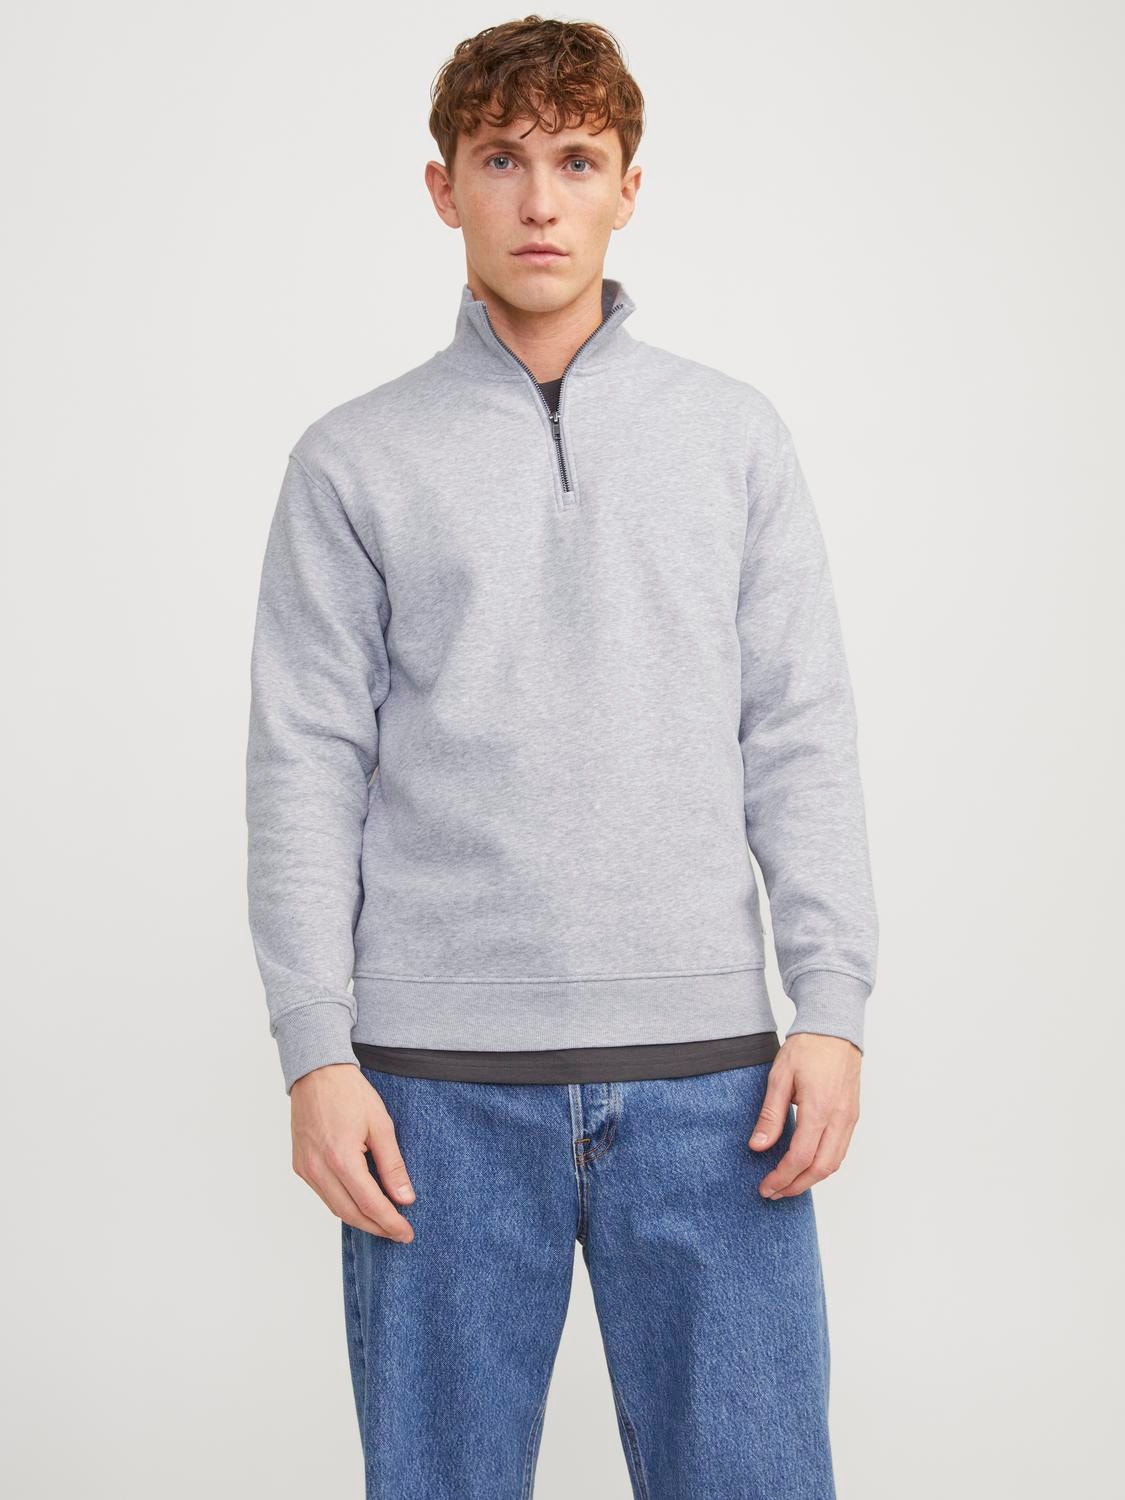 Jack & Jones Plain Half Zip Sweatshirt -Light Grey Melange - 12250747